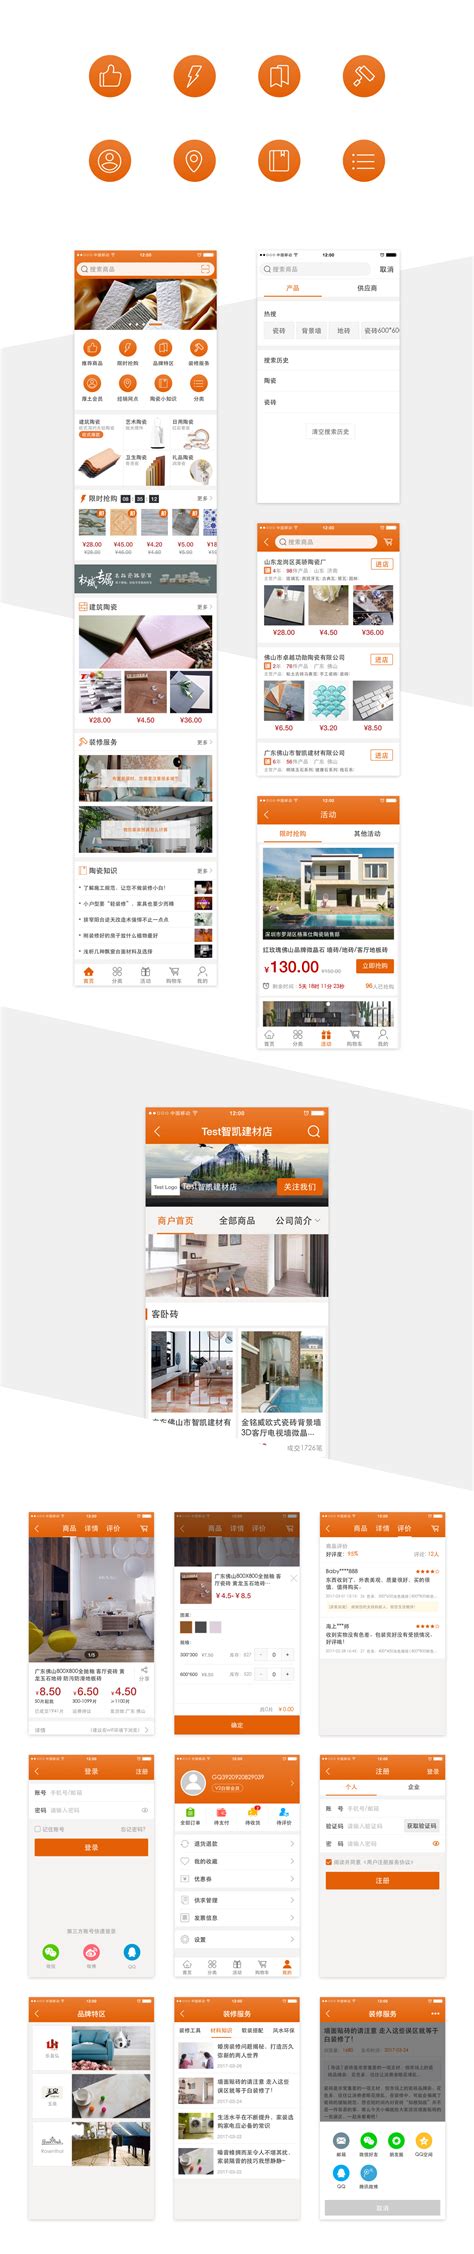 MUJO沐玖瓷砖行业画册设计案例欣赏-广州古柏广告策划有限公司